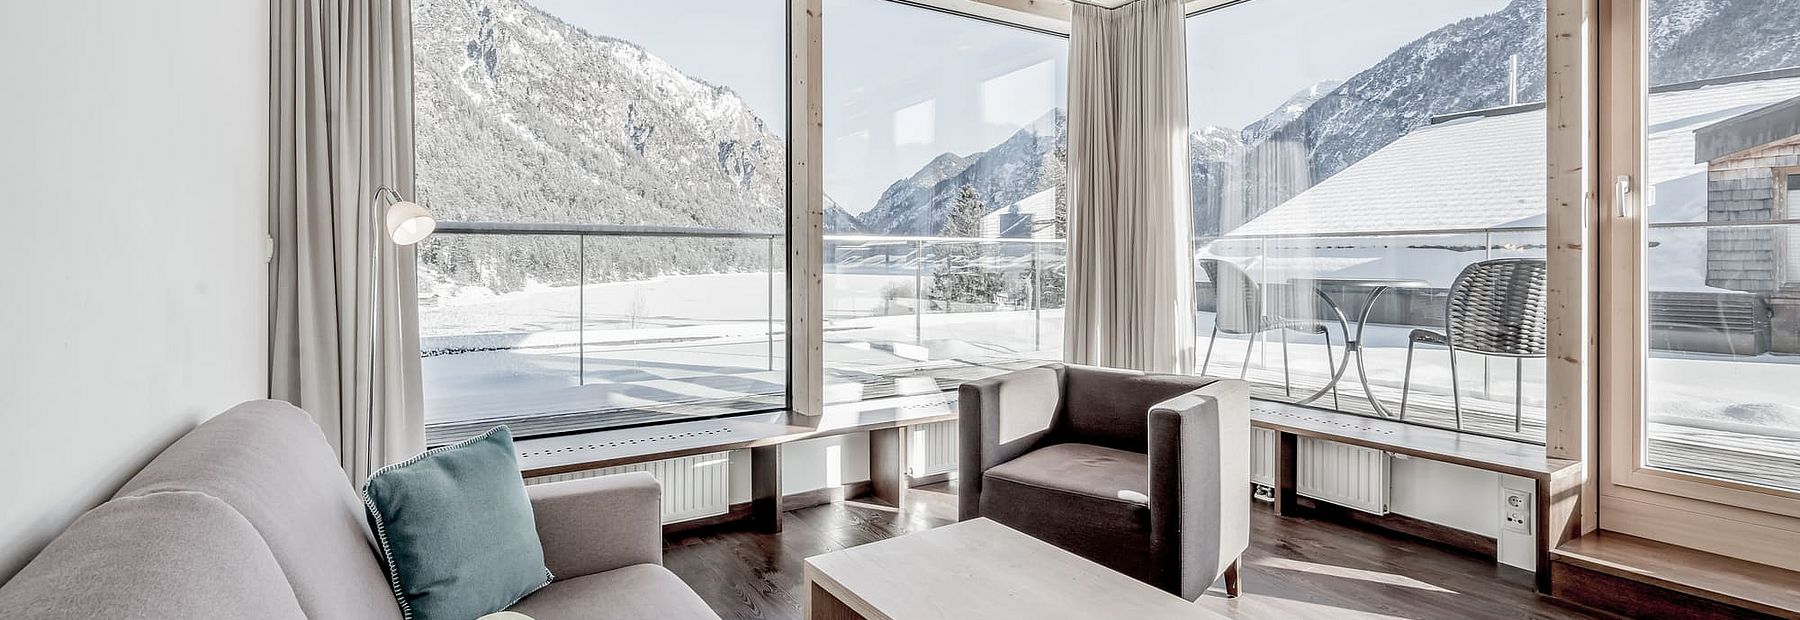 Zimmer mit Terrasse und Panoramablick auf den Heiterwanger See und die Berge im Winter